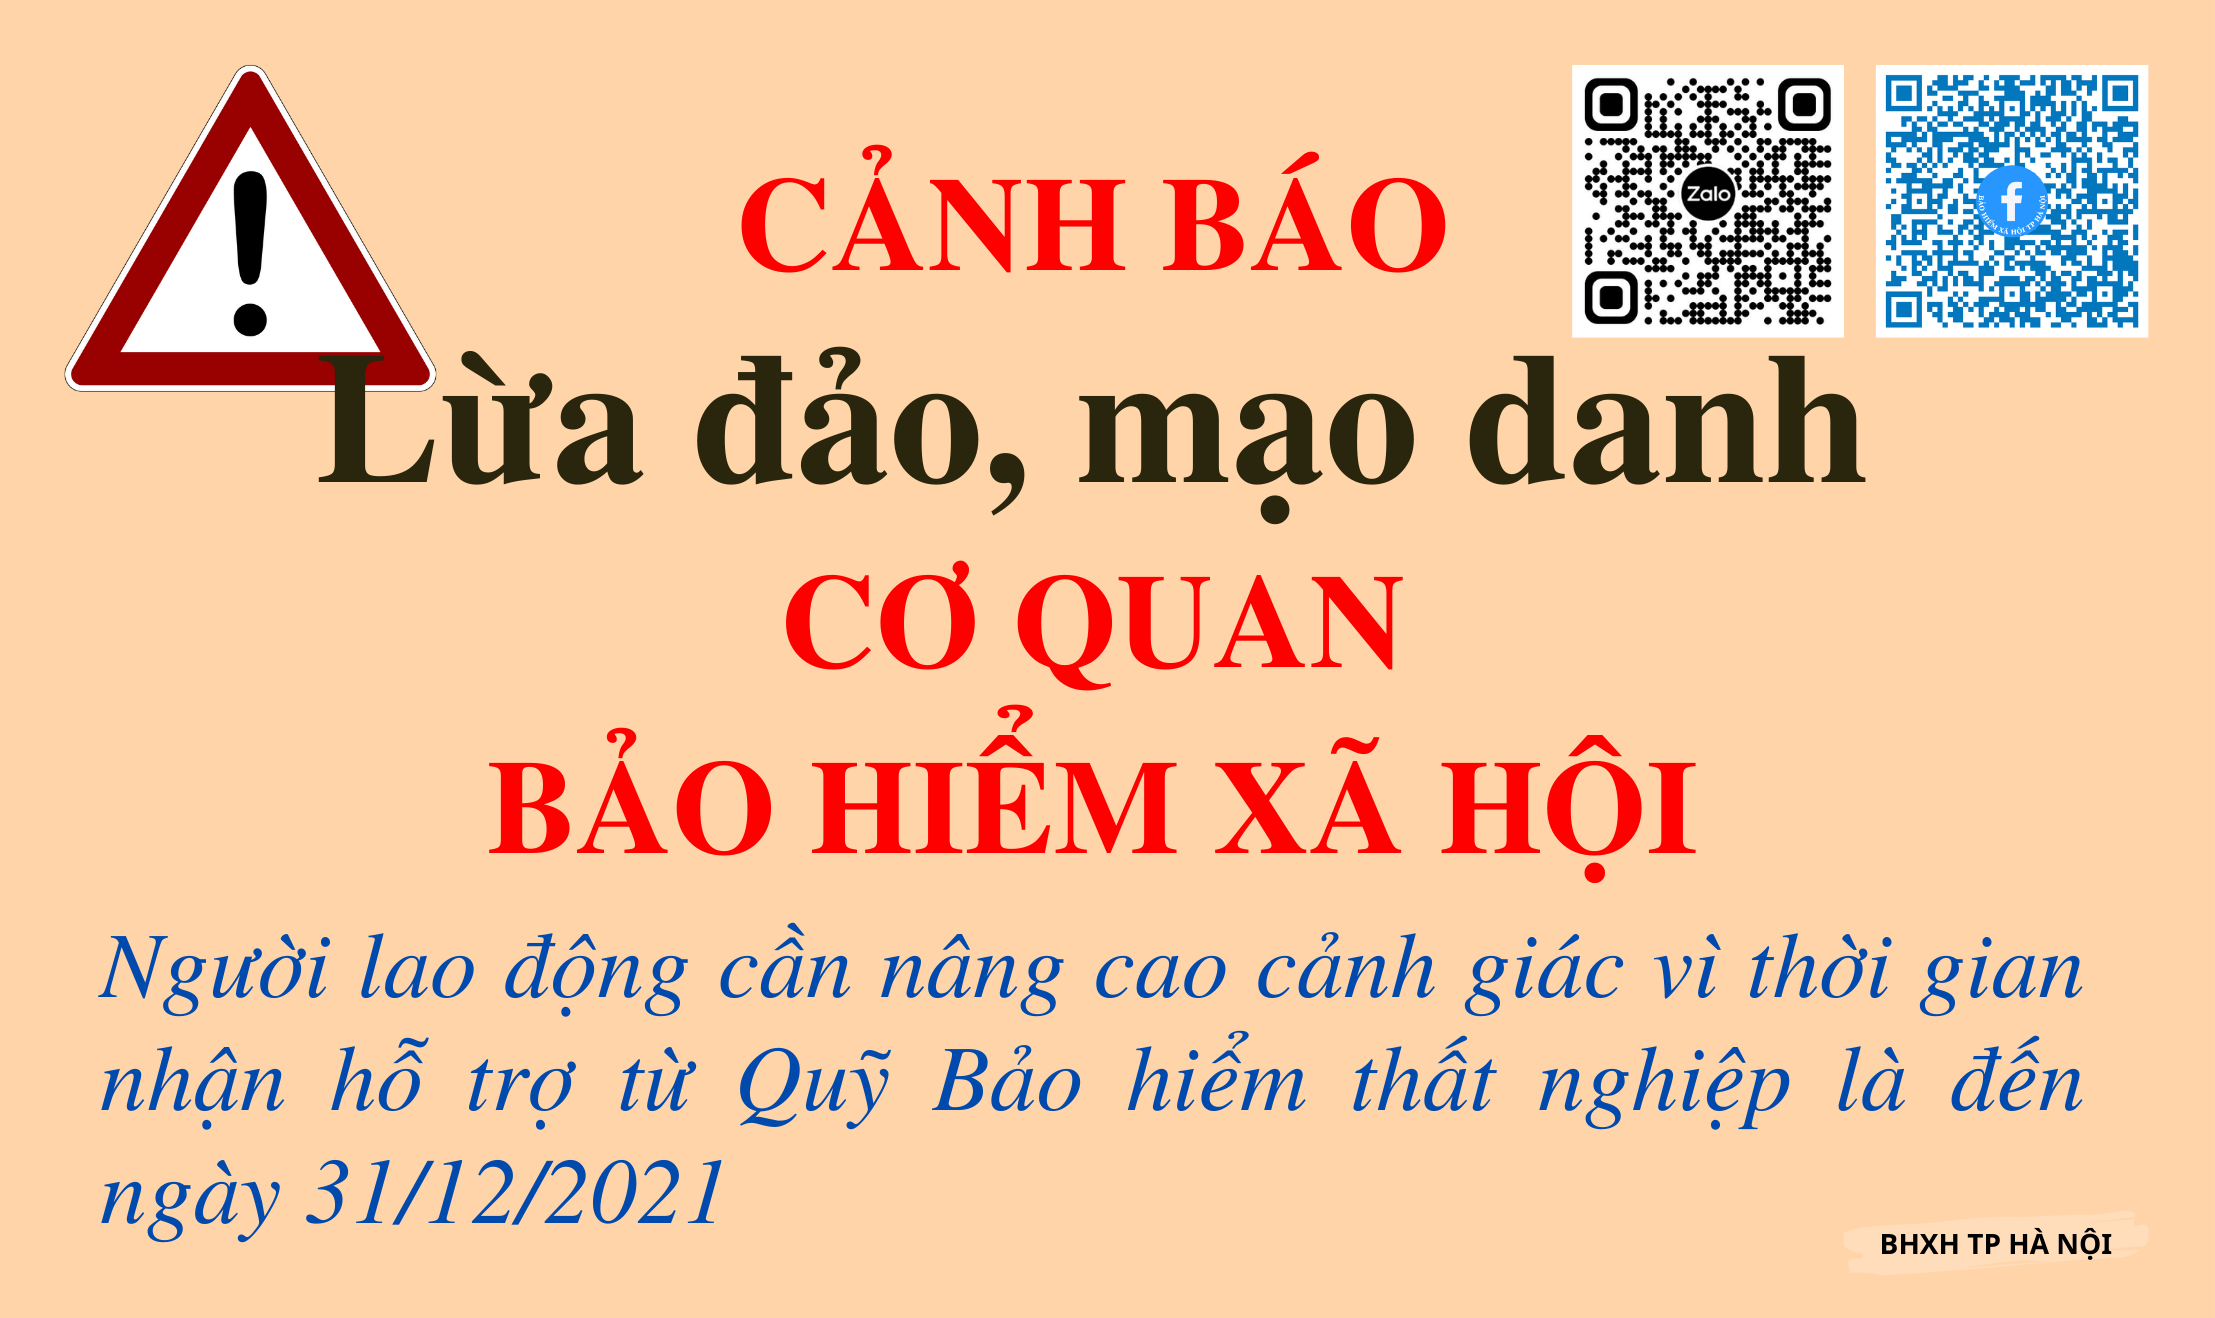 BHXH thành phố Hà Nội cảnh báo tình trạng mạo danh để lừa đảo.